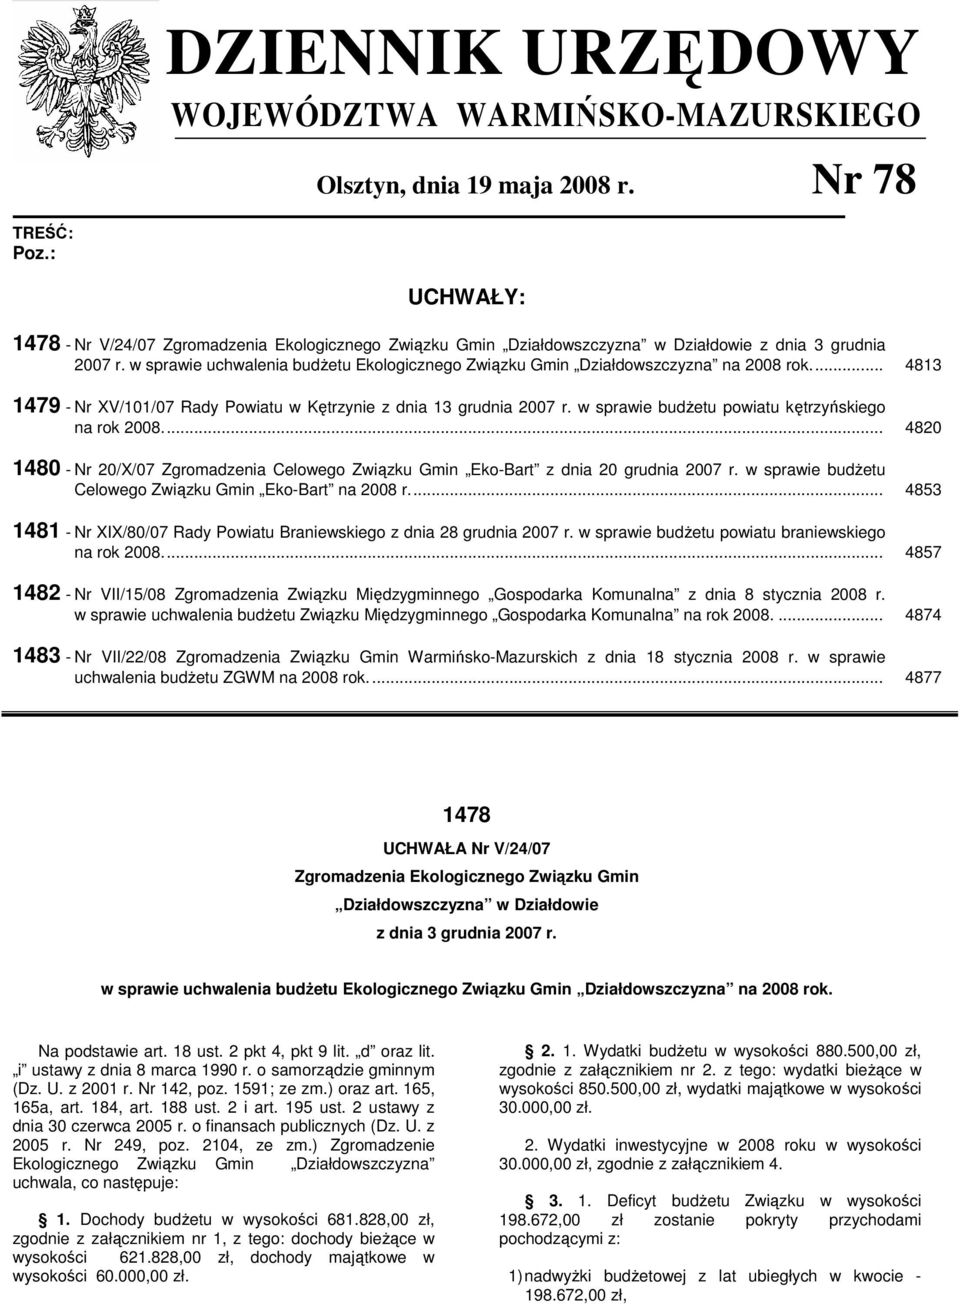 w sprawie uchwalenia budŝetu Ekologicznego Związku Gmin Działdowszczyzna na 2008 rok... 4813 1479 - Nr XV/101/07 Rady Powiatu w Kętrzynie z dnia 13 grudnia 2007 r.